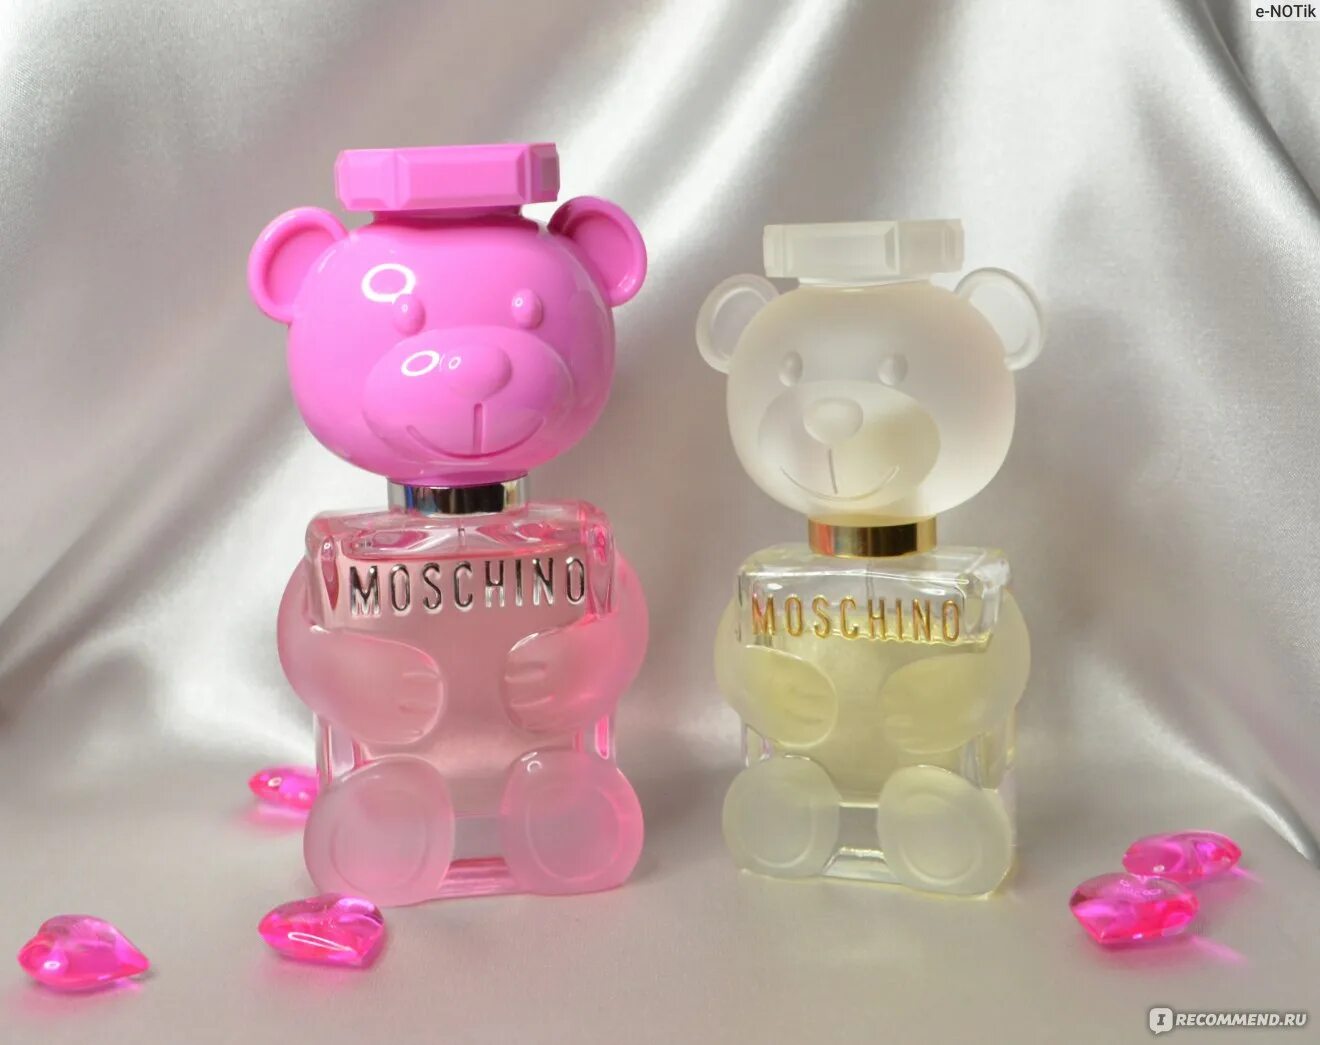 Moschino "Toy 2 Bubble Gum Eau de Toilette" 100 ml. Moschino Toy 2. Moschino Perfume Toy 2. Moschino Toy 2 Bubble Gum 5 мл.